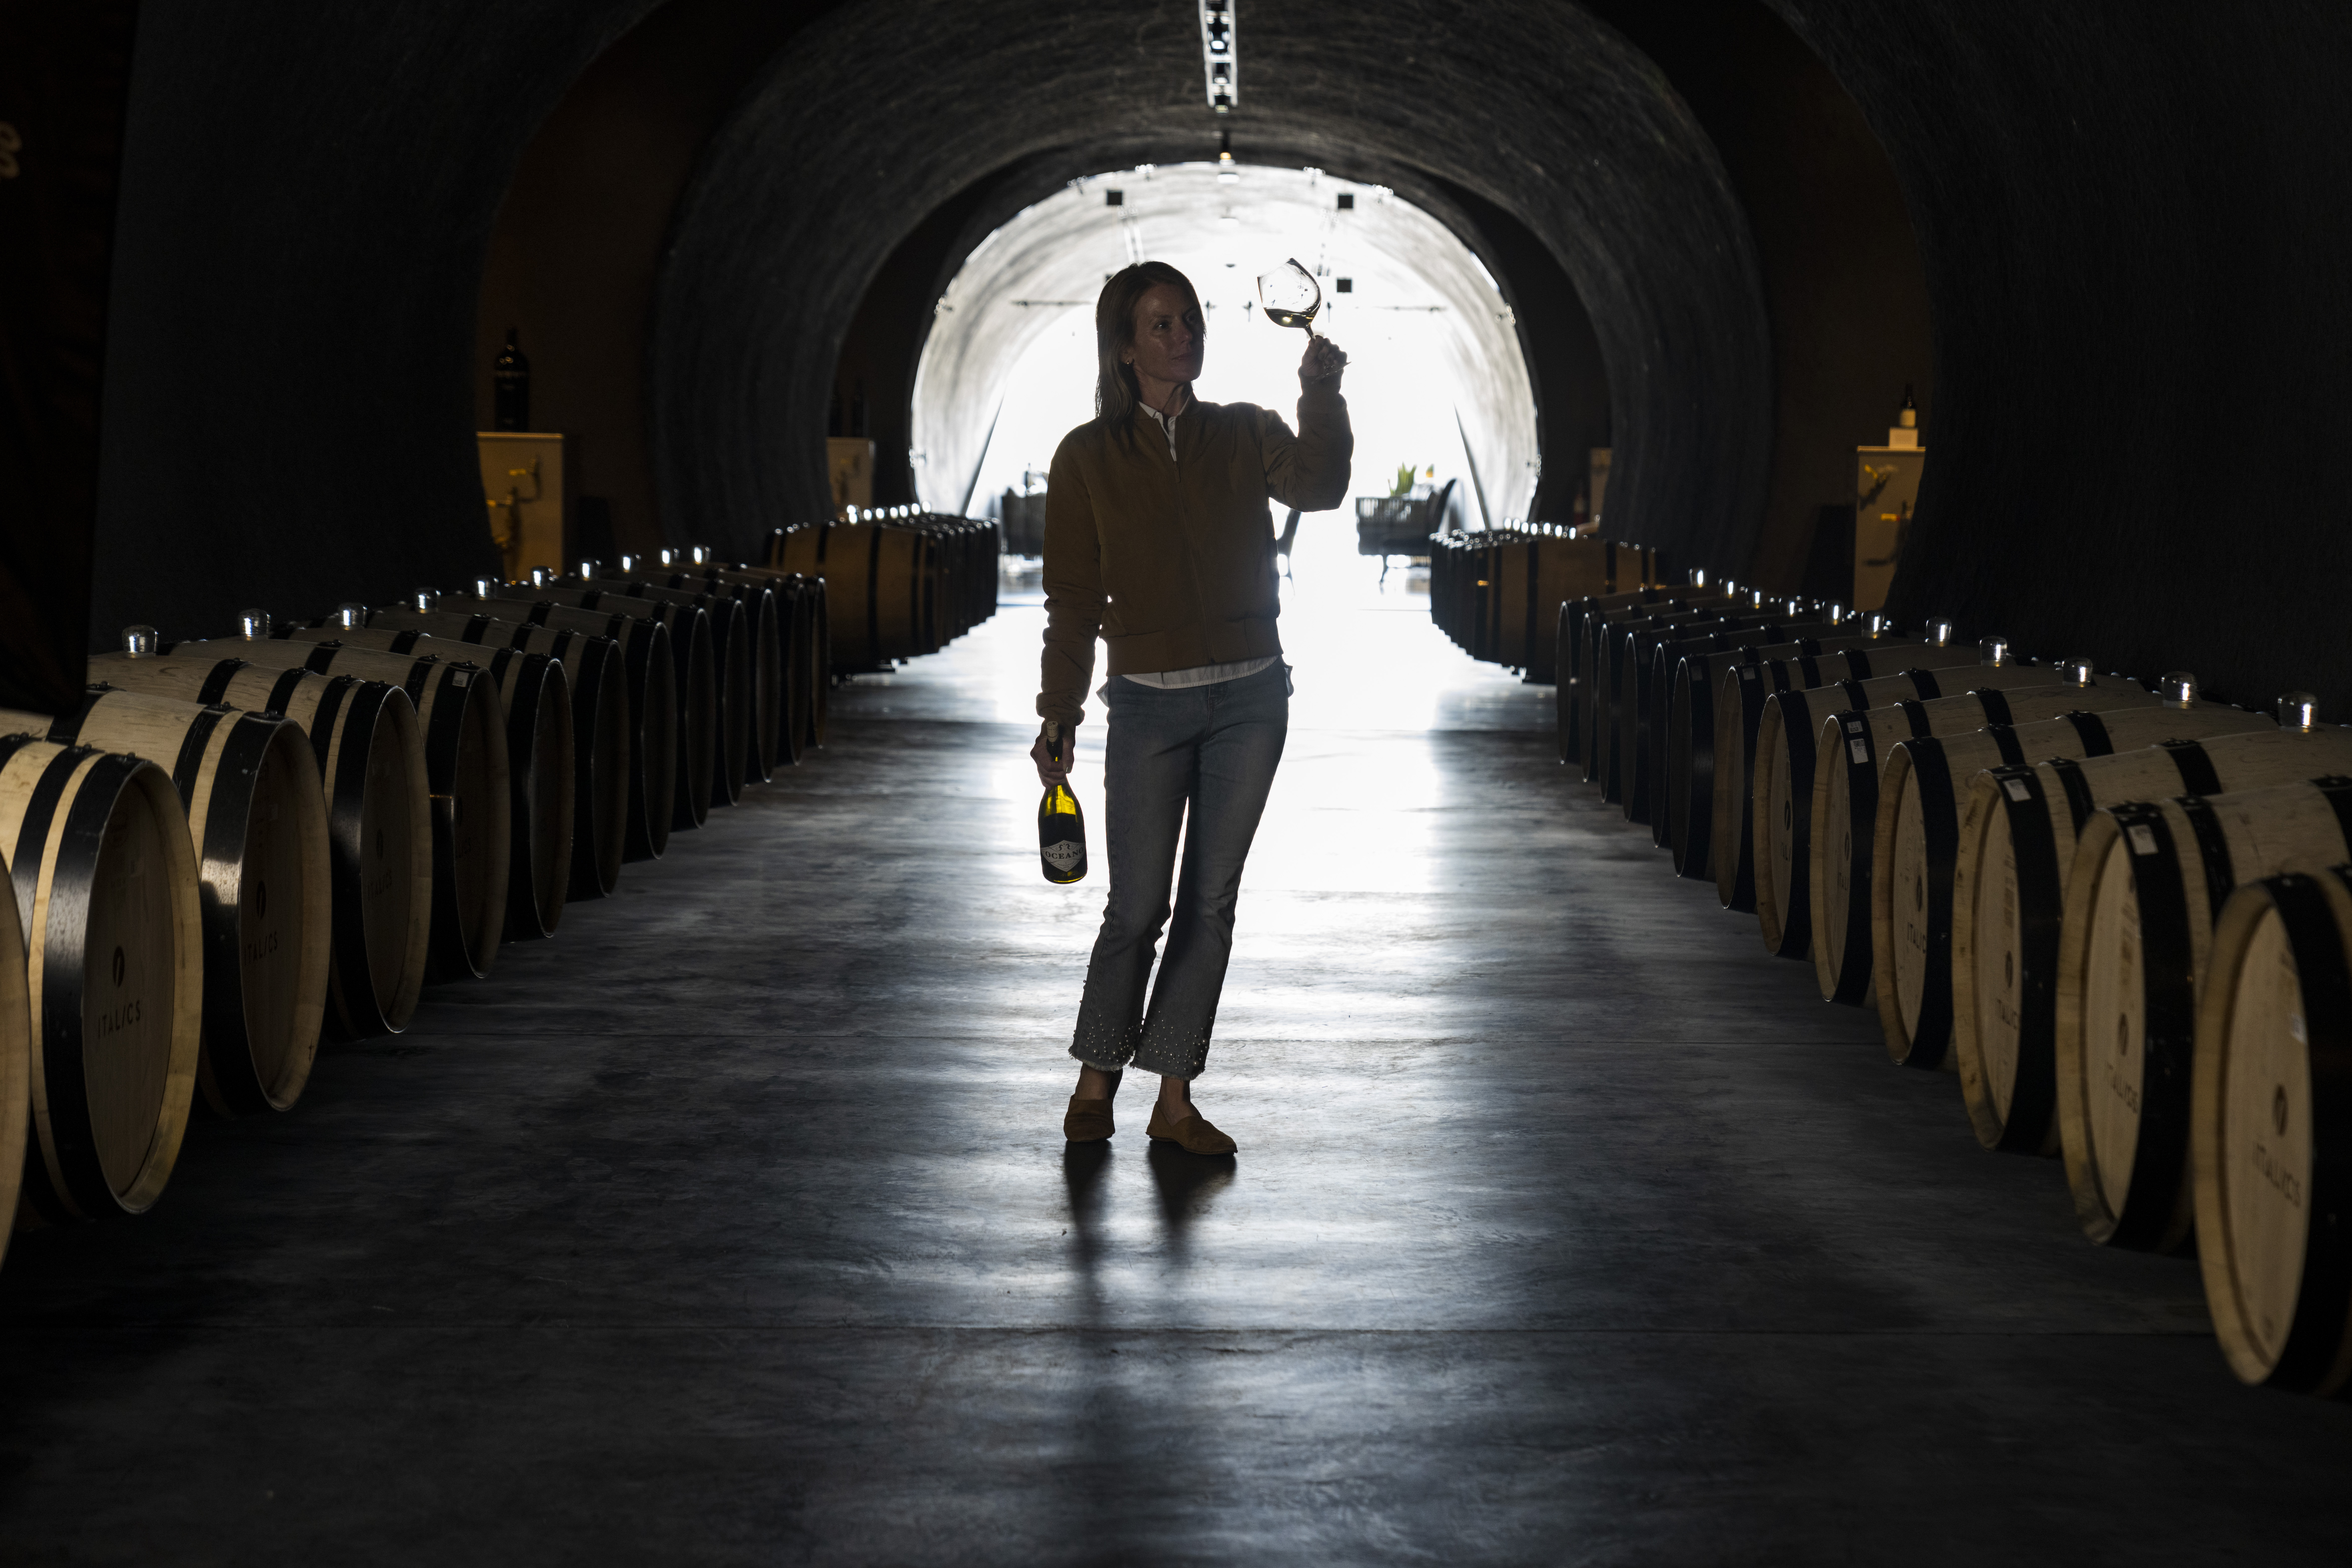 Rachel Martin in winery tunnel swirling glass of wine